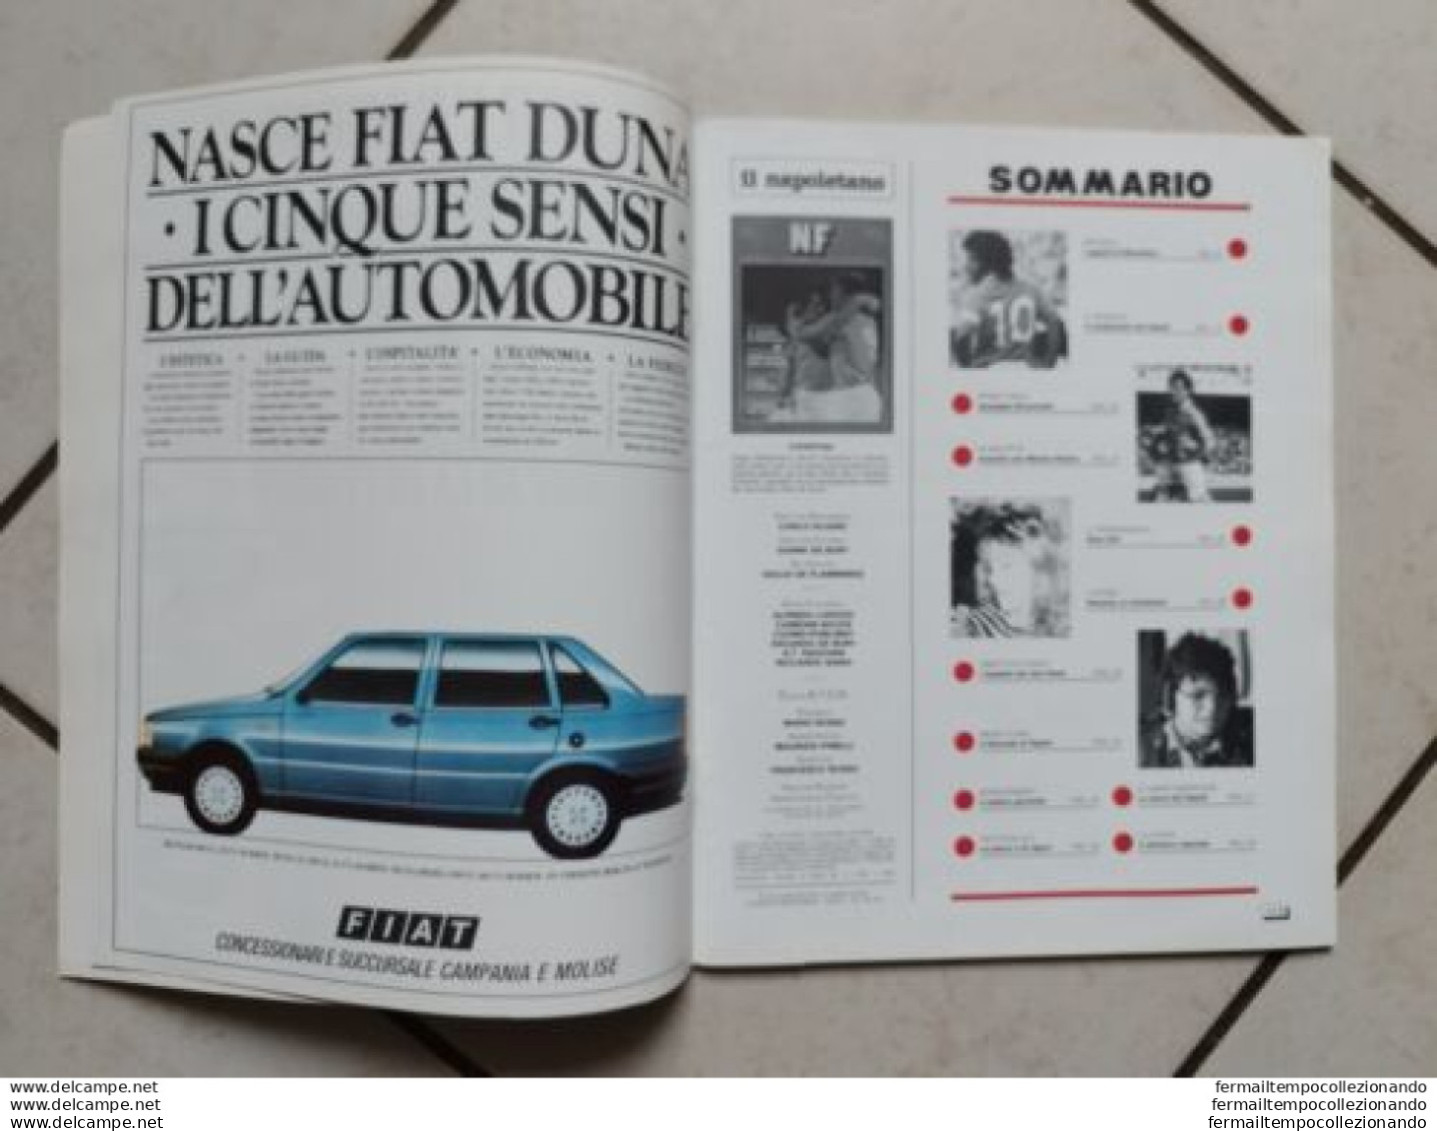 Bo Rivista Nf Napoli  Flash Maradona  Le Foto Piu' A Cura Dell'atcn 1987 Calcio - Libri